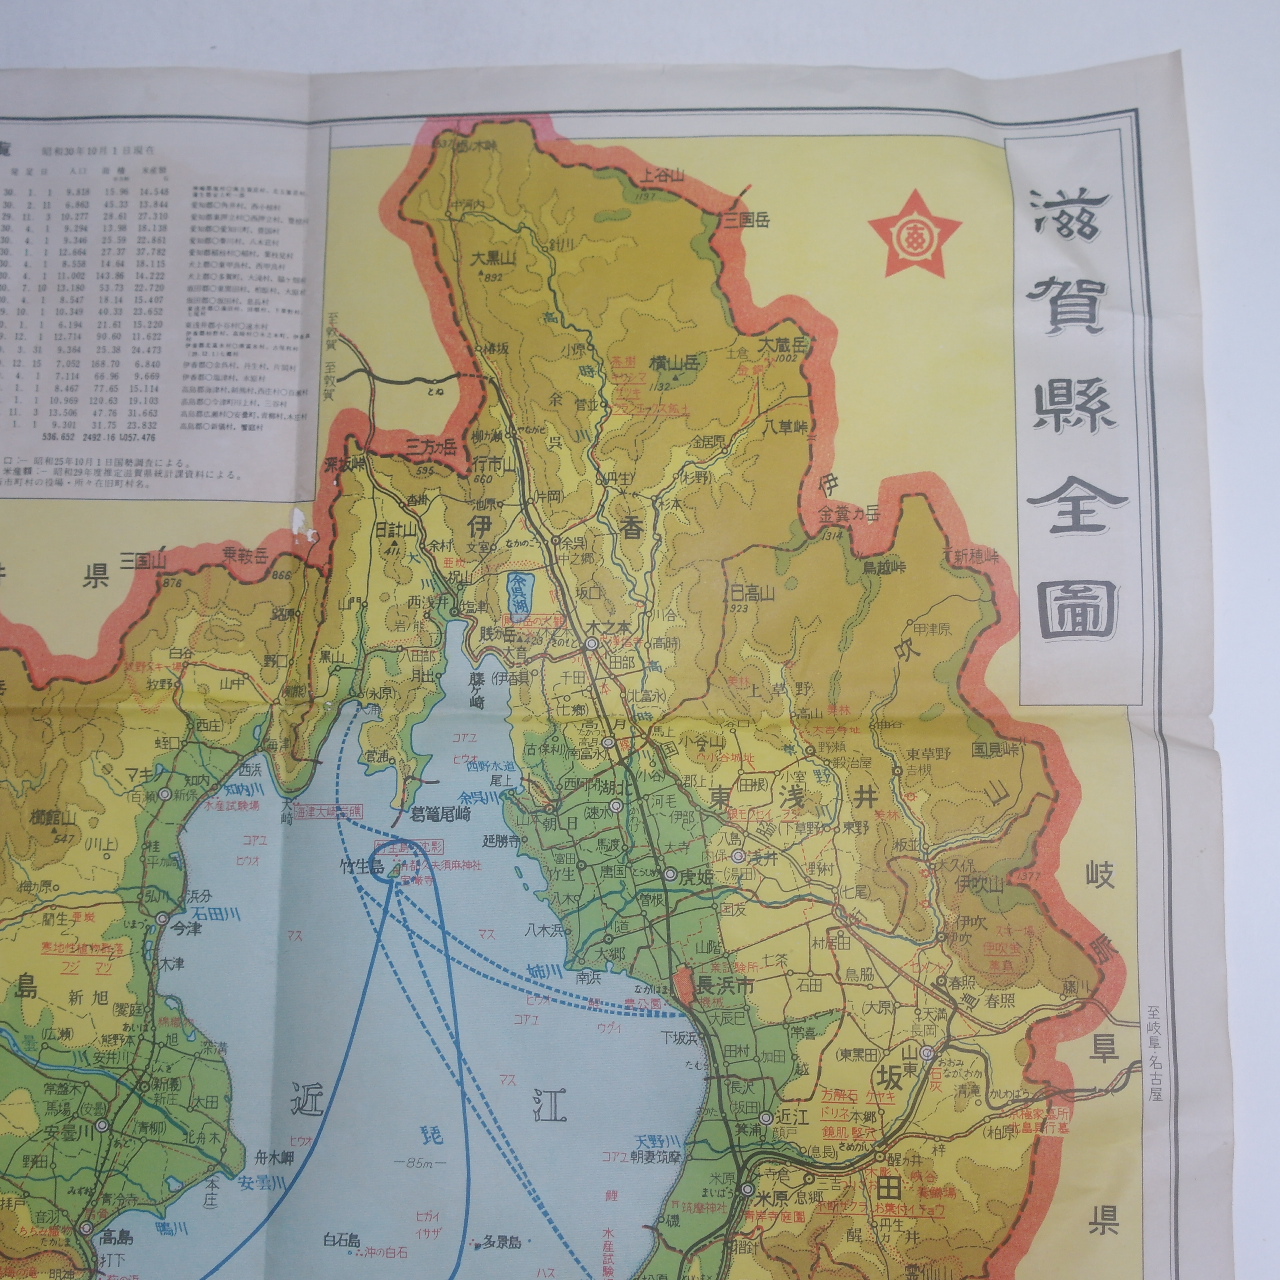 1955년 자하현지도(滋賀県地圖)